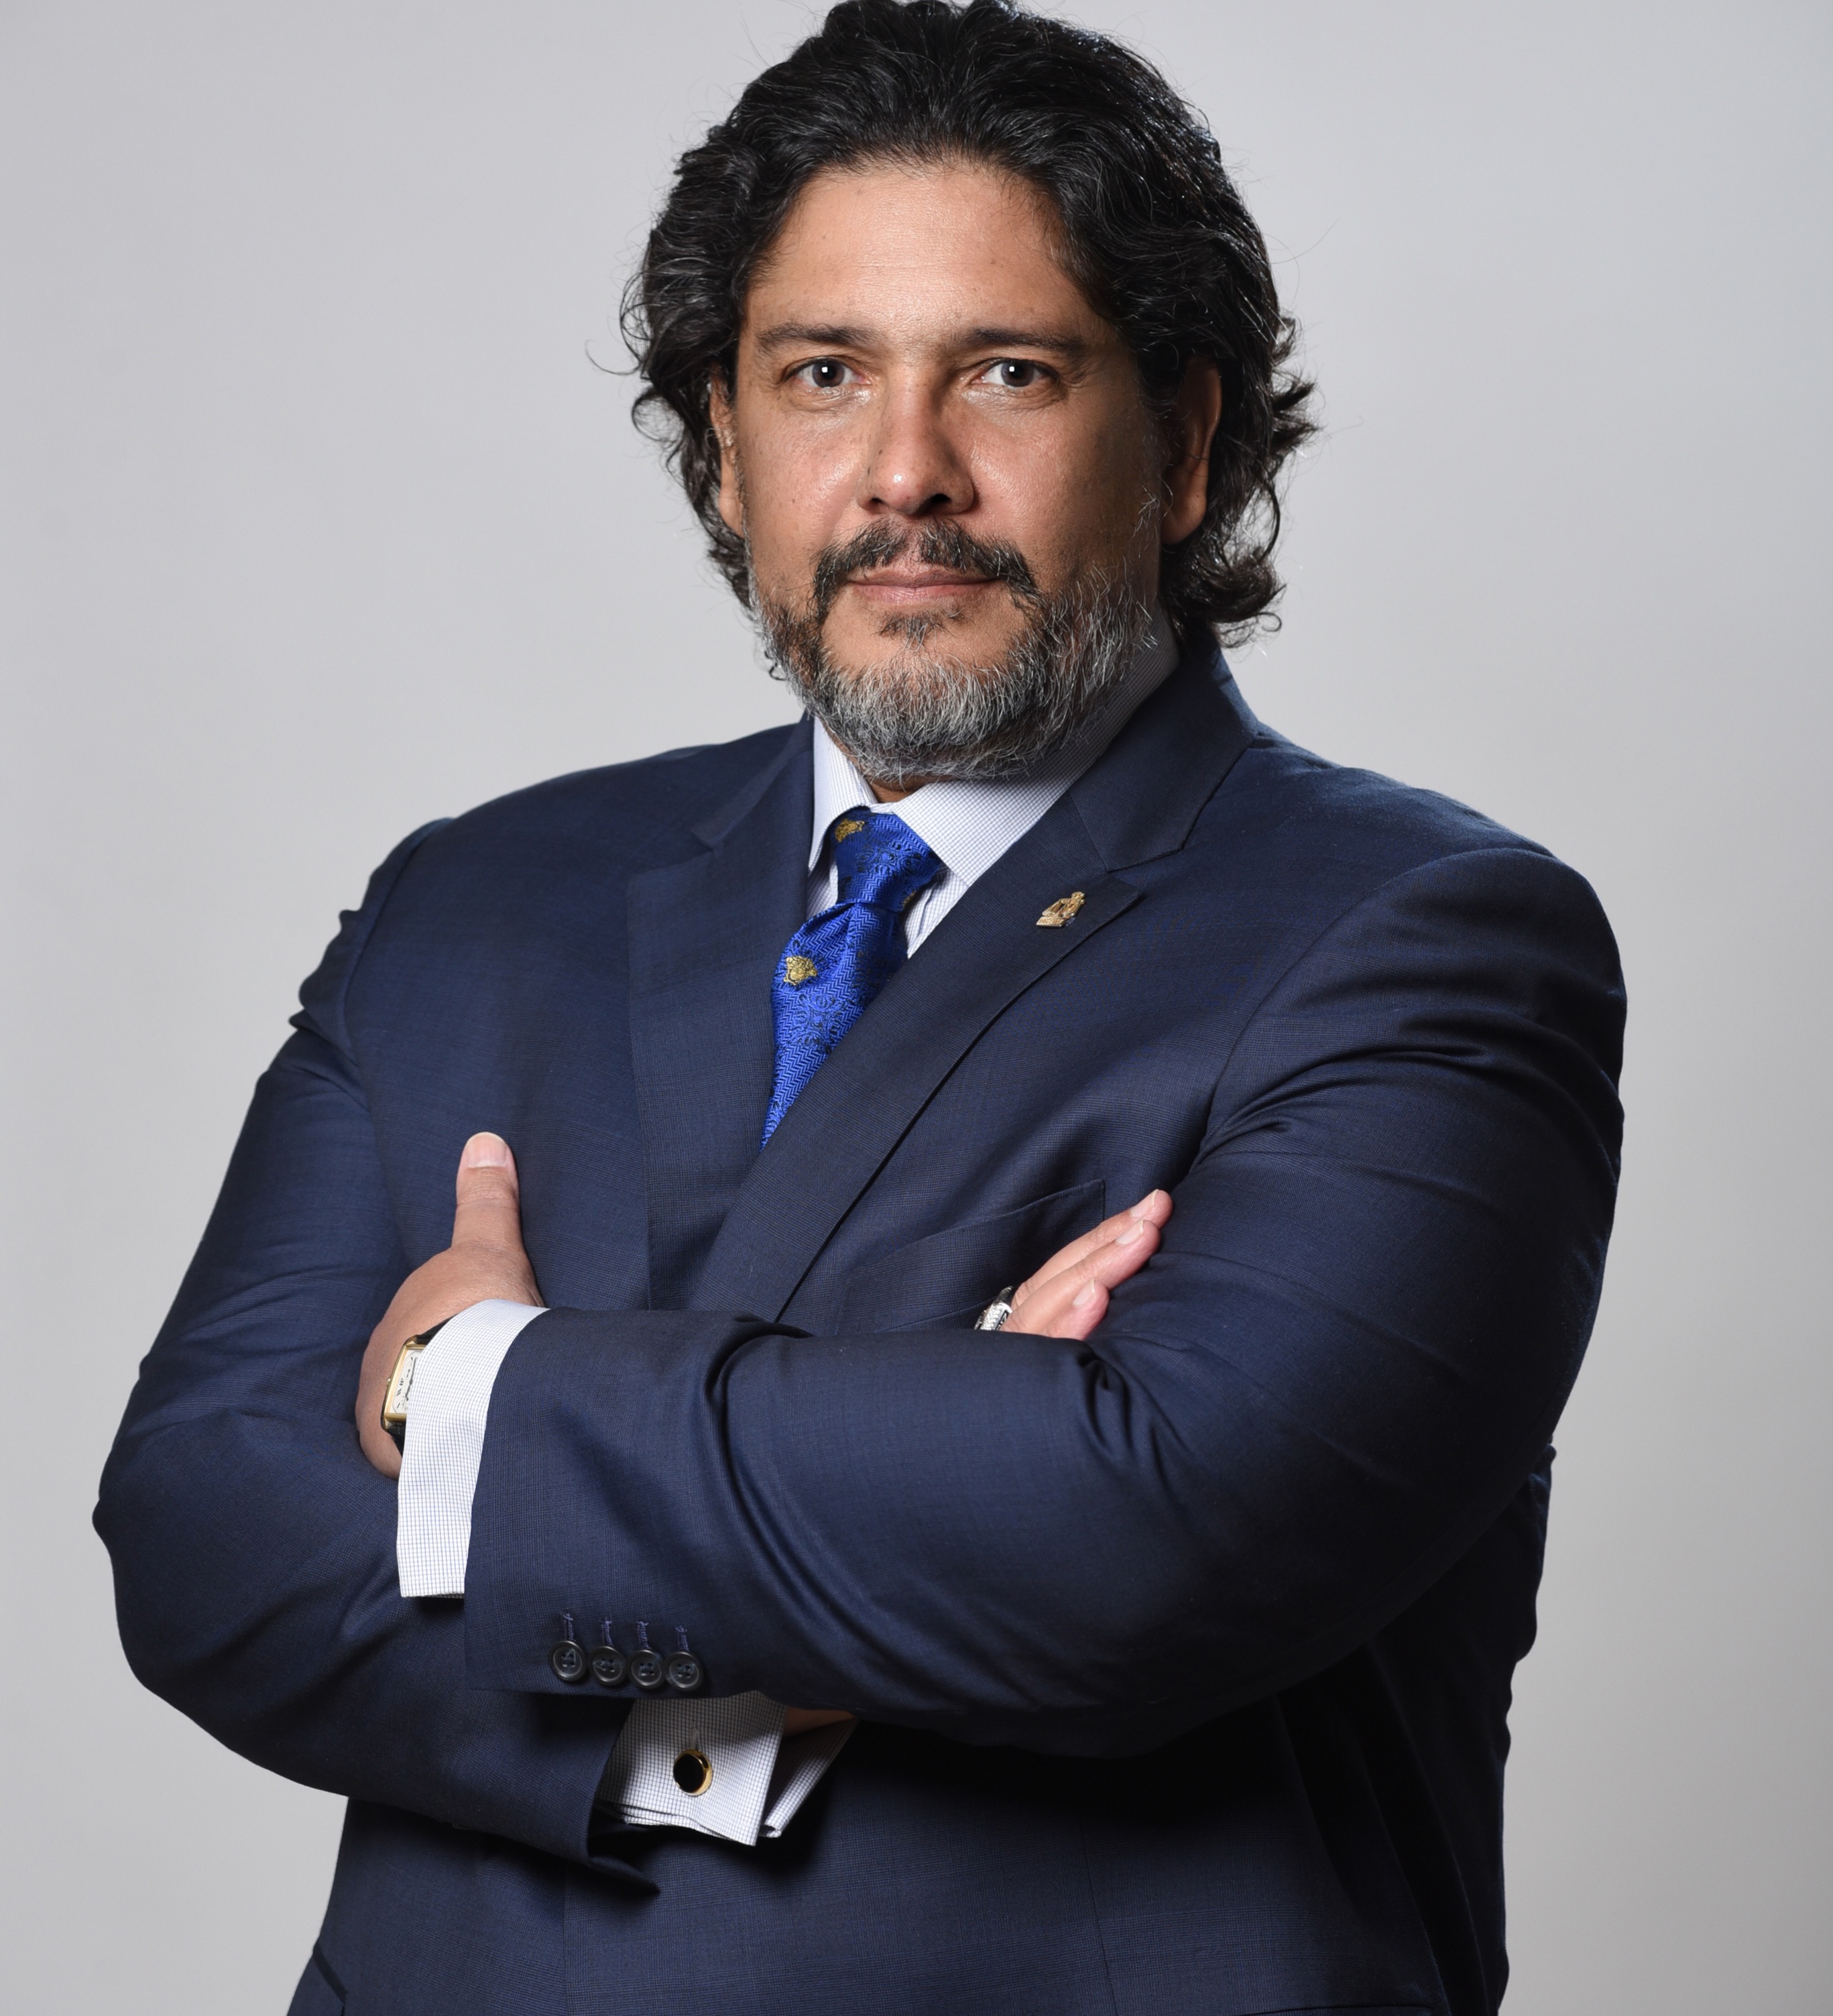 Jorge Luis Lopez's Profile Image